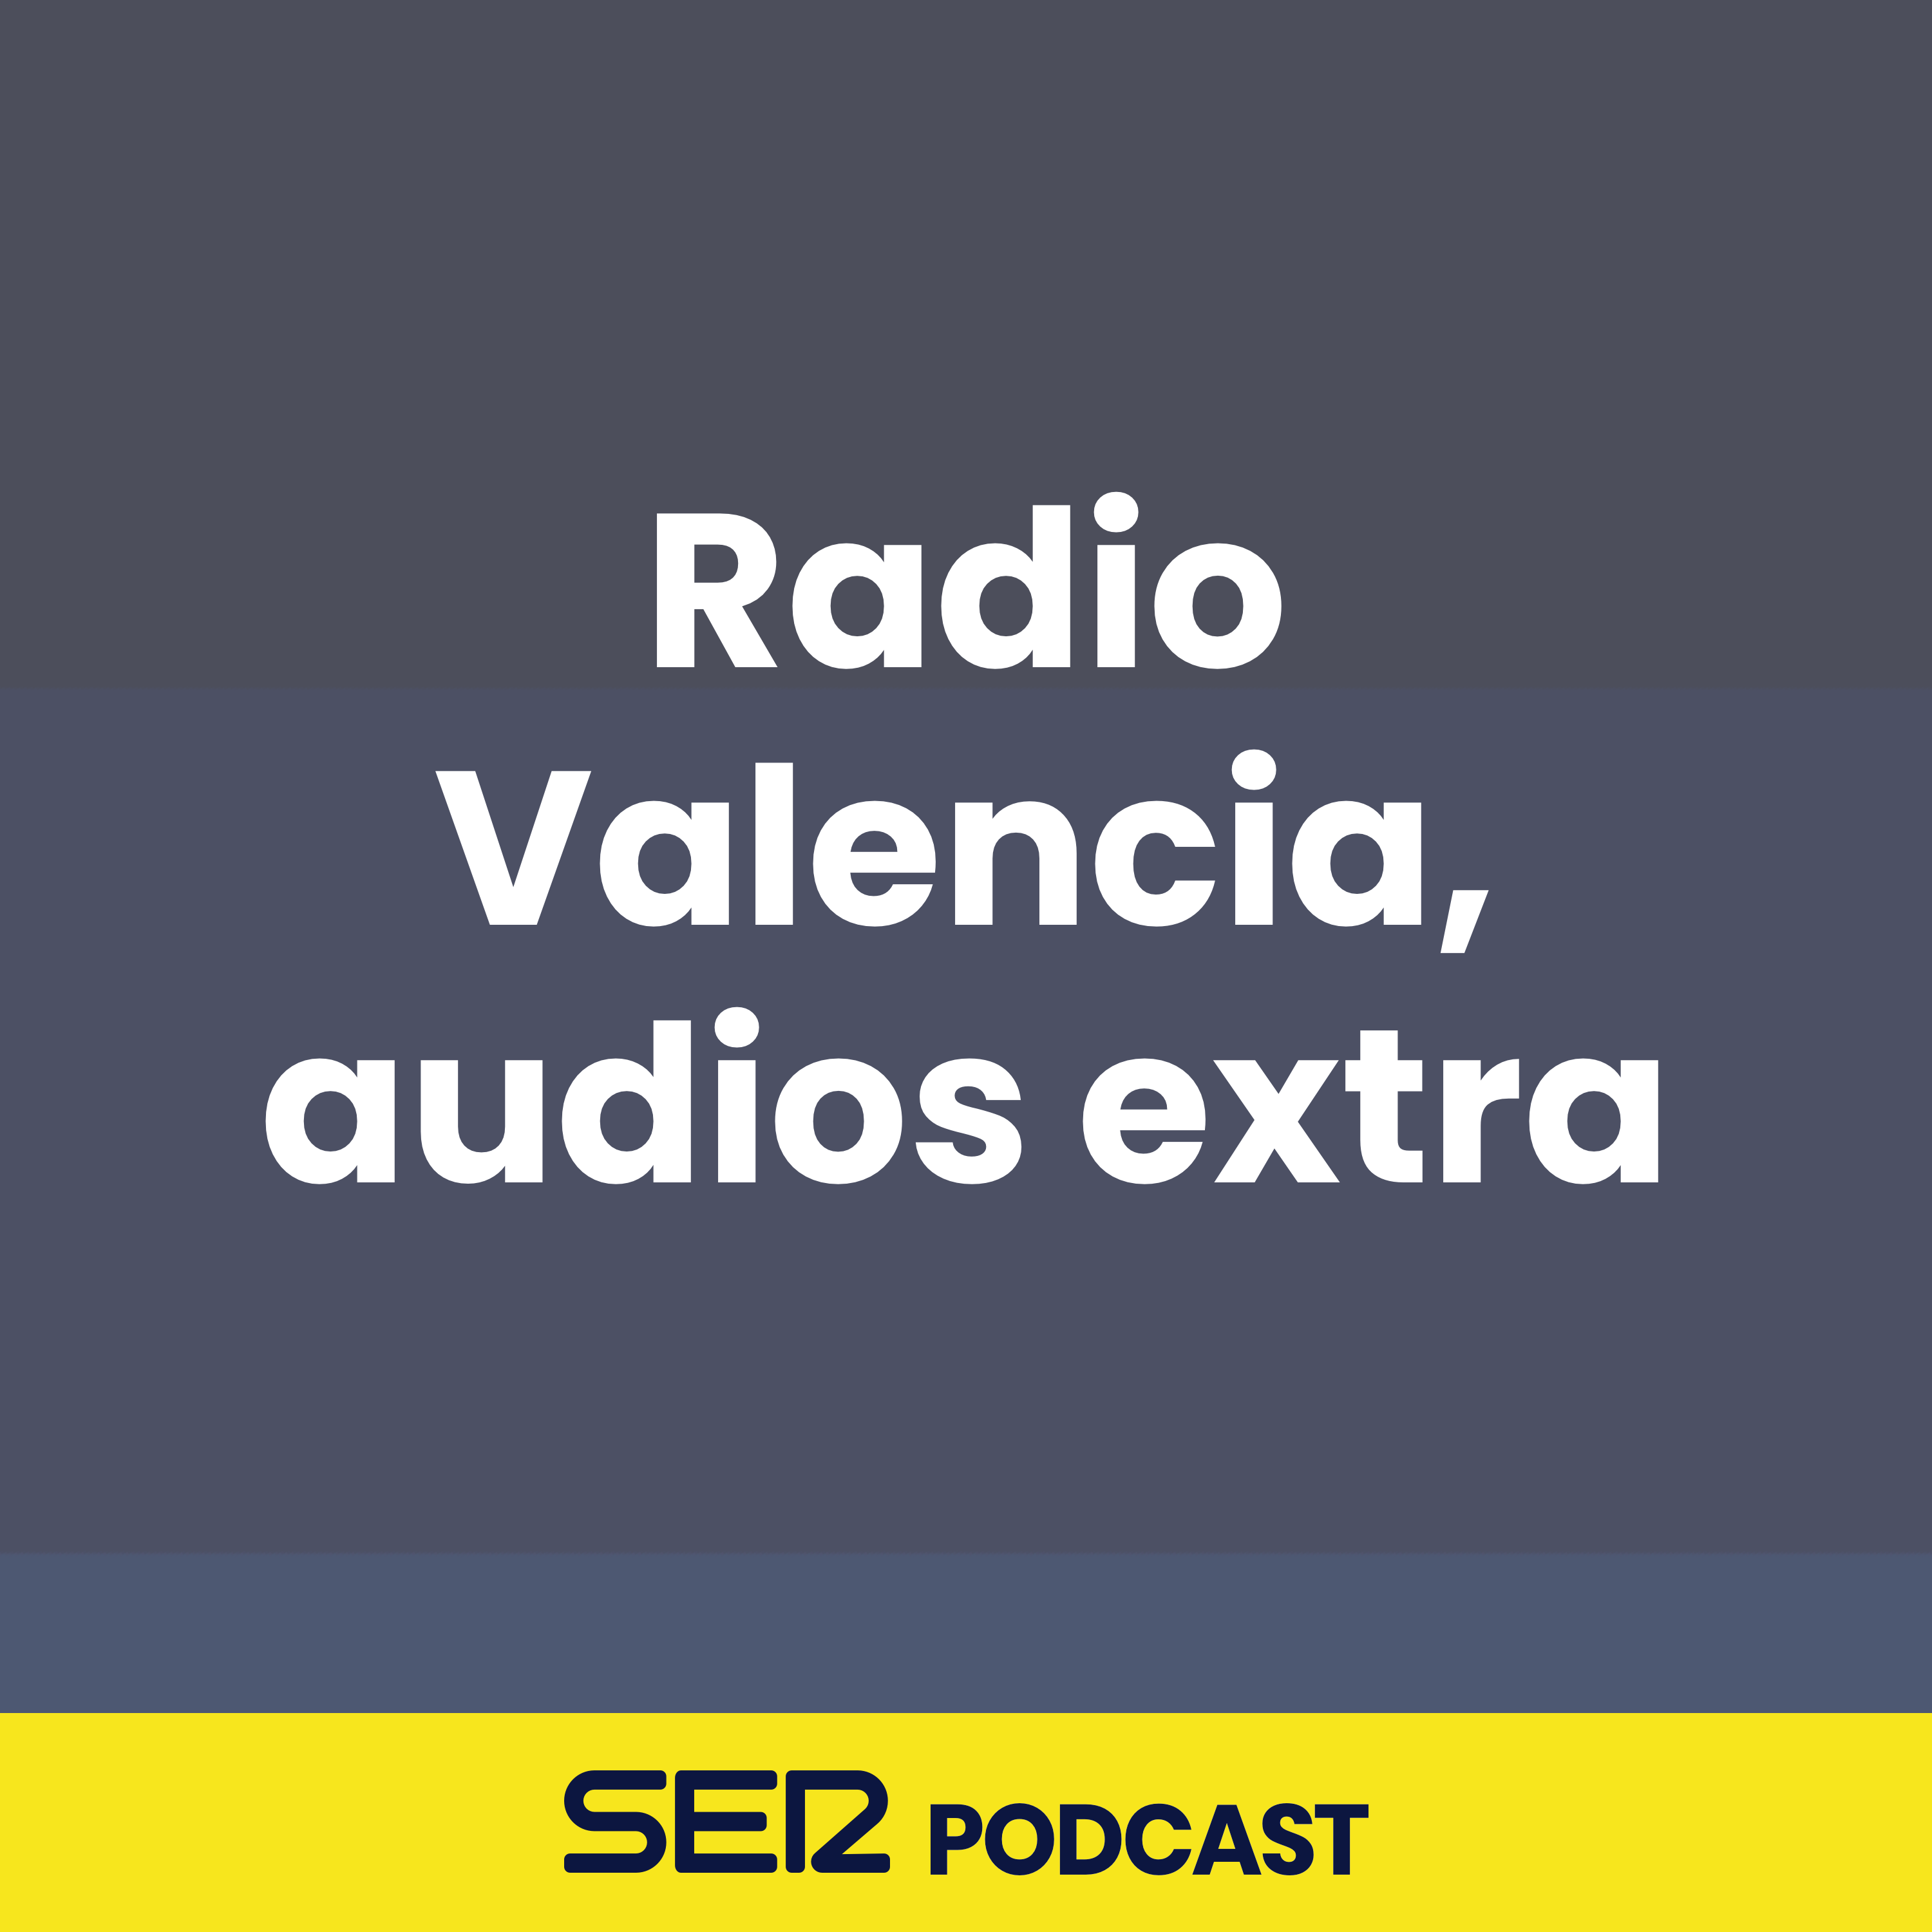 Radio Valencia, audios extra